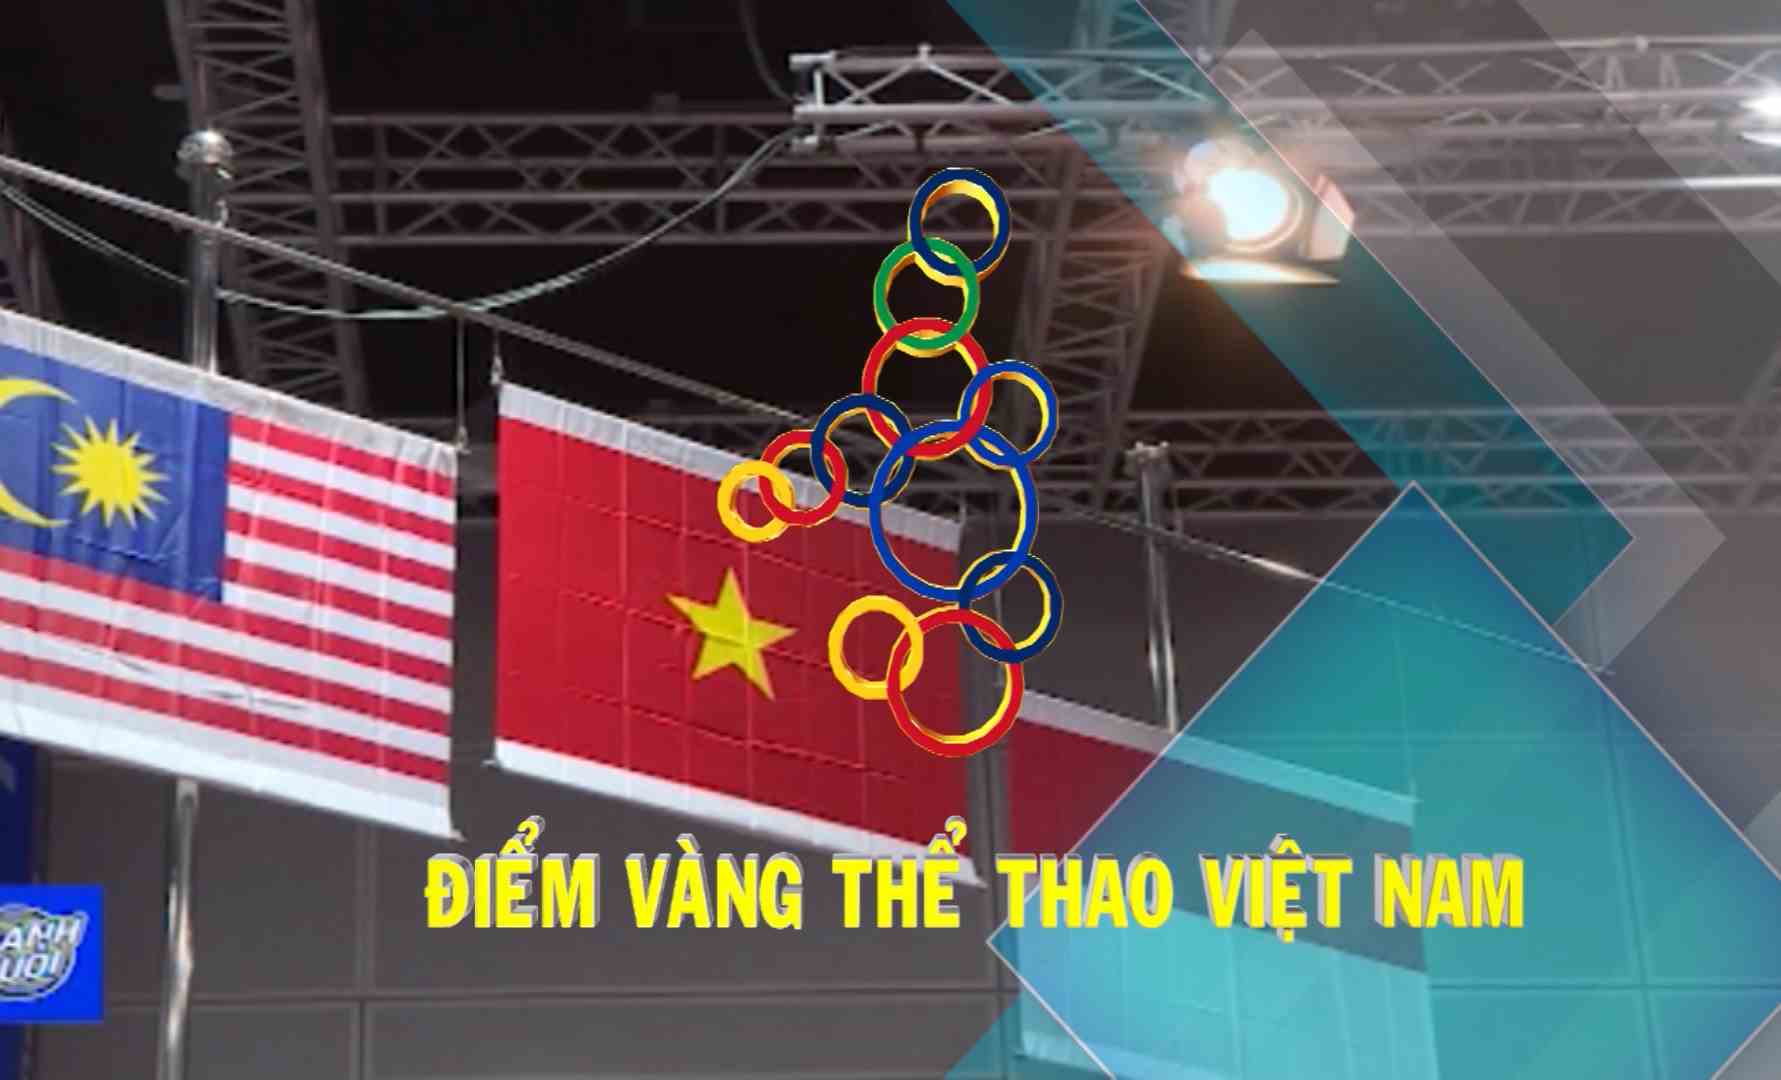 [Video] Điểm vàng thể thao Việt Nam (06-12-2019)